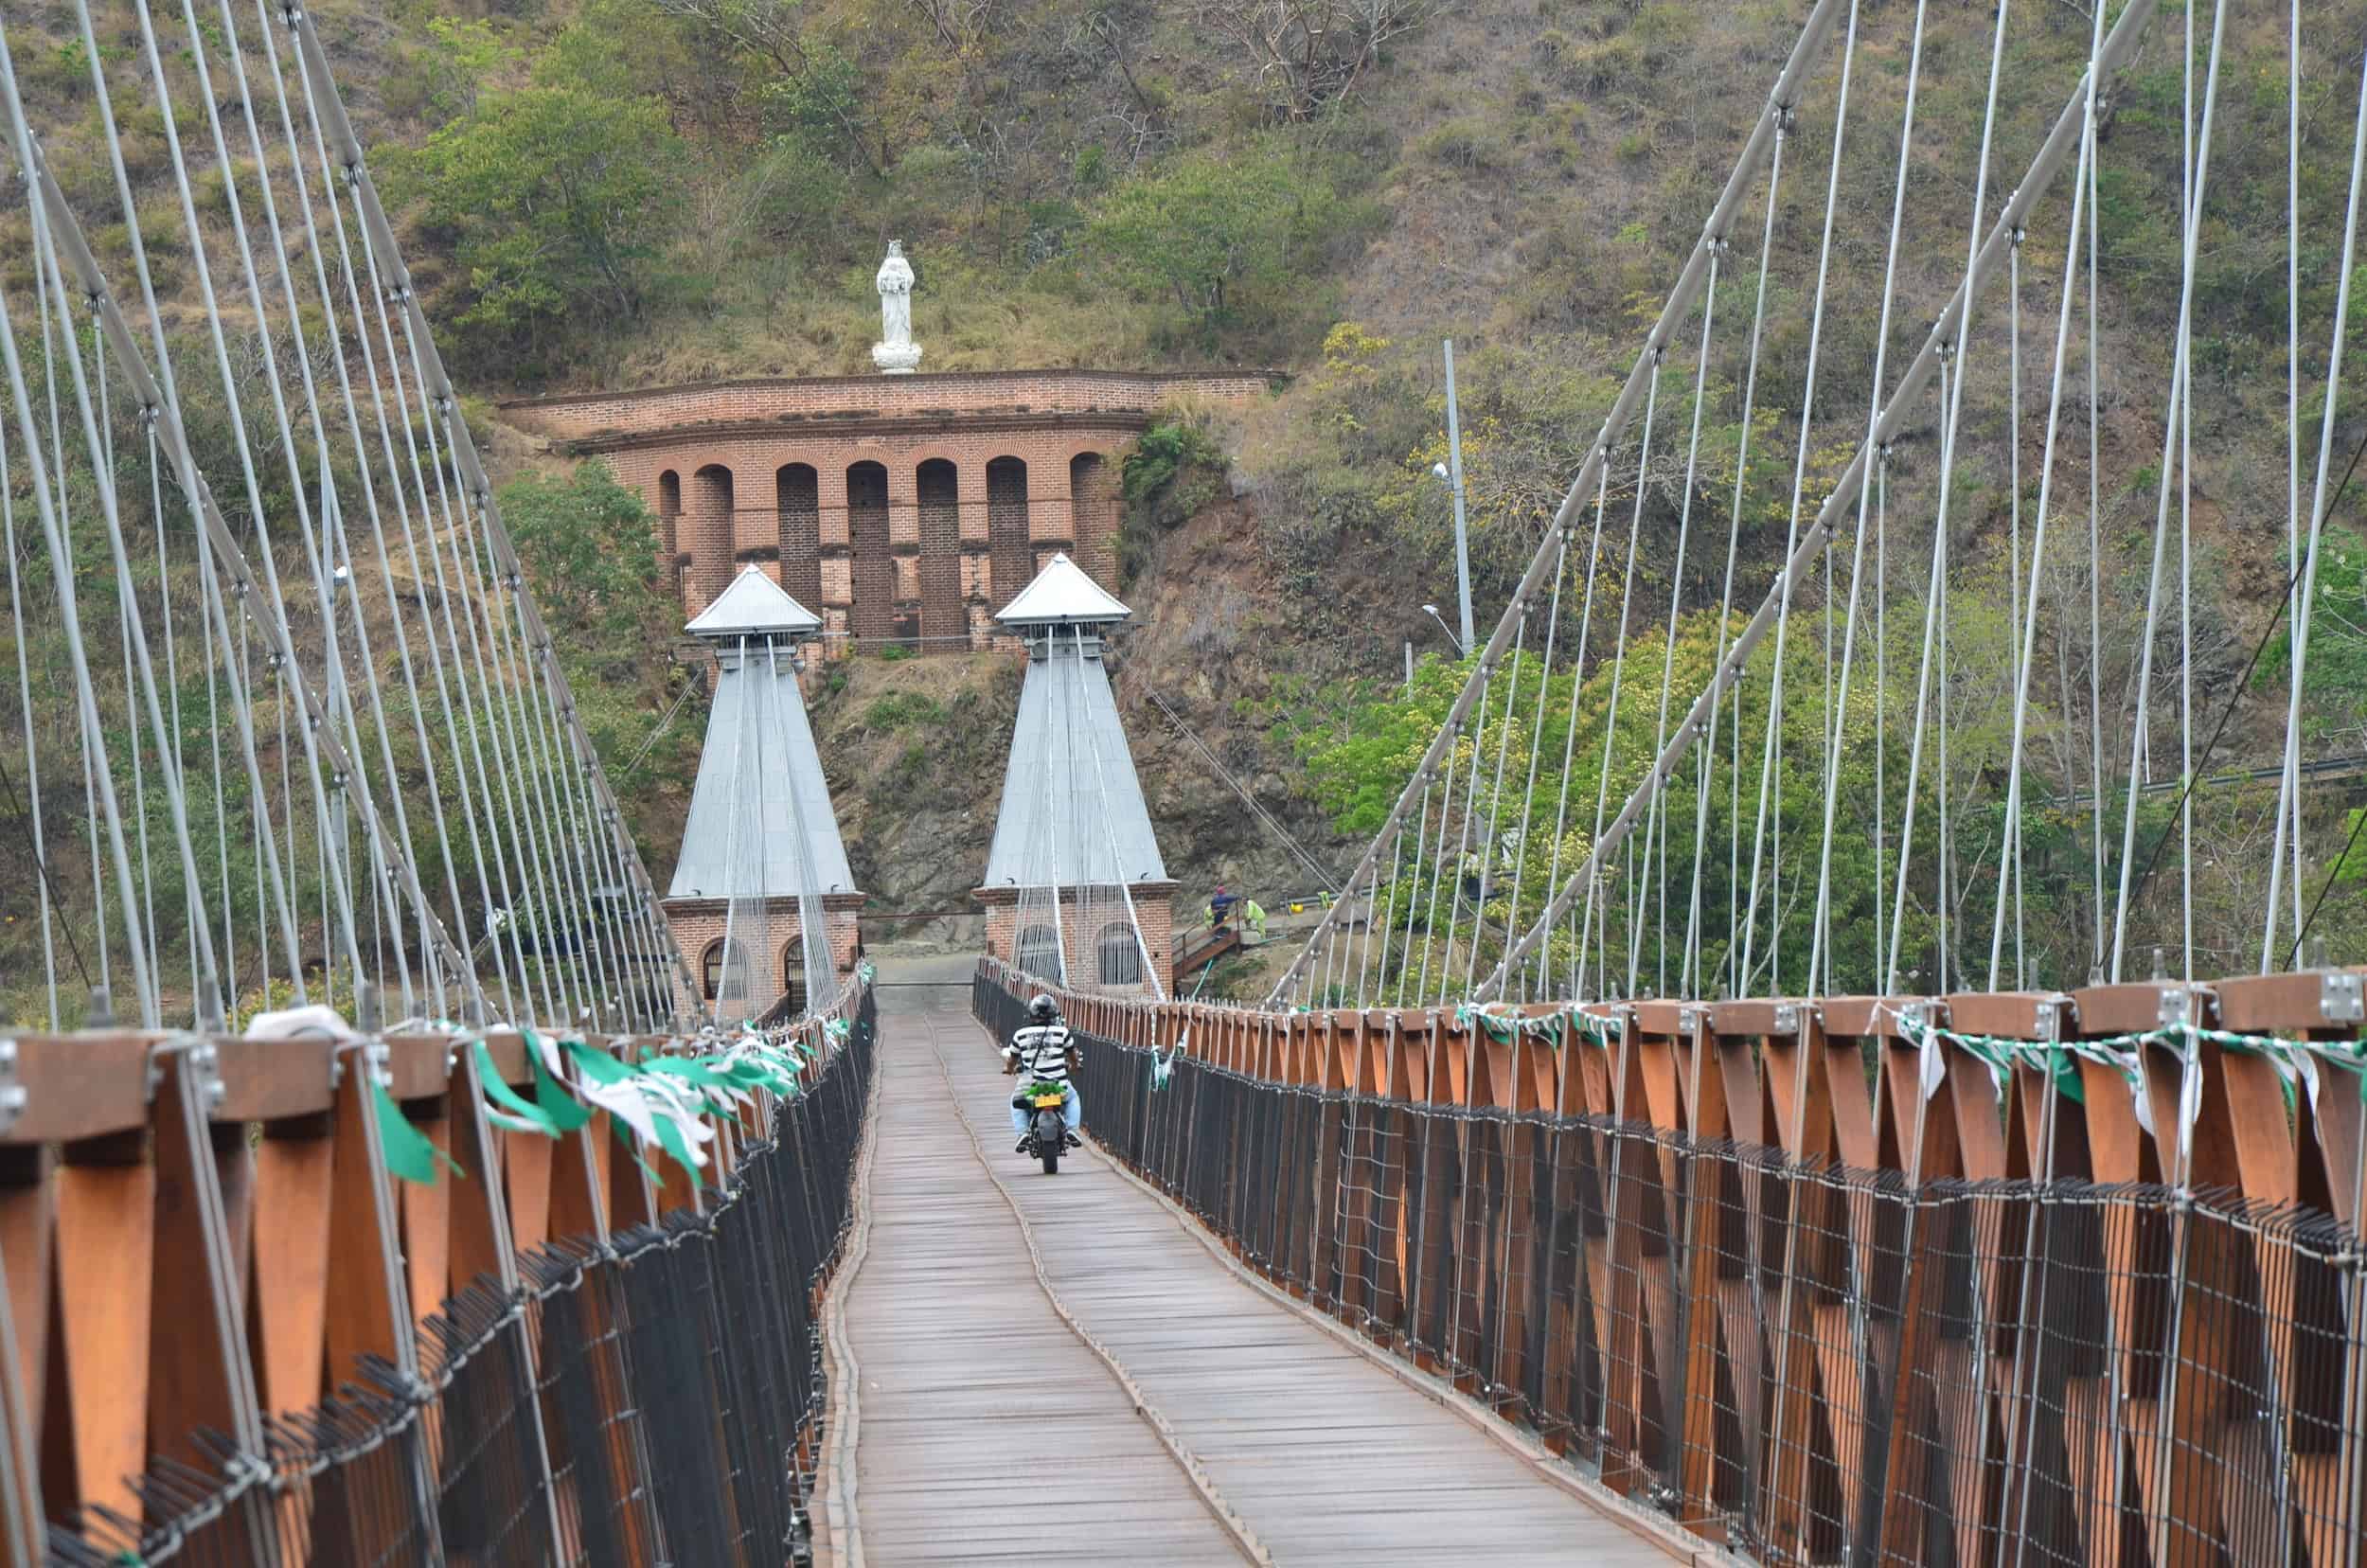 Motorcycle crossing the bridge at the Puente de Occidente in Santa Fe de Antioquia, Colombia